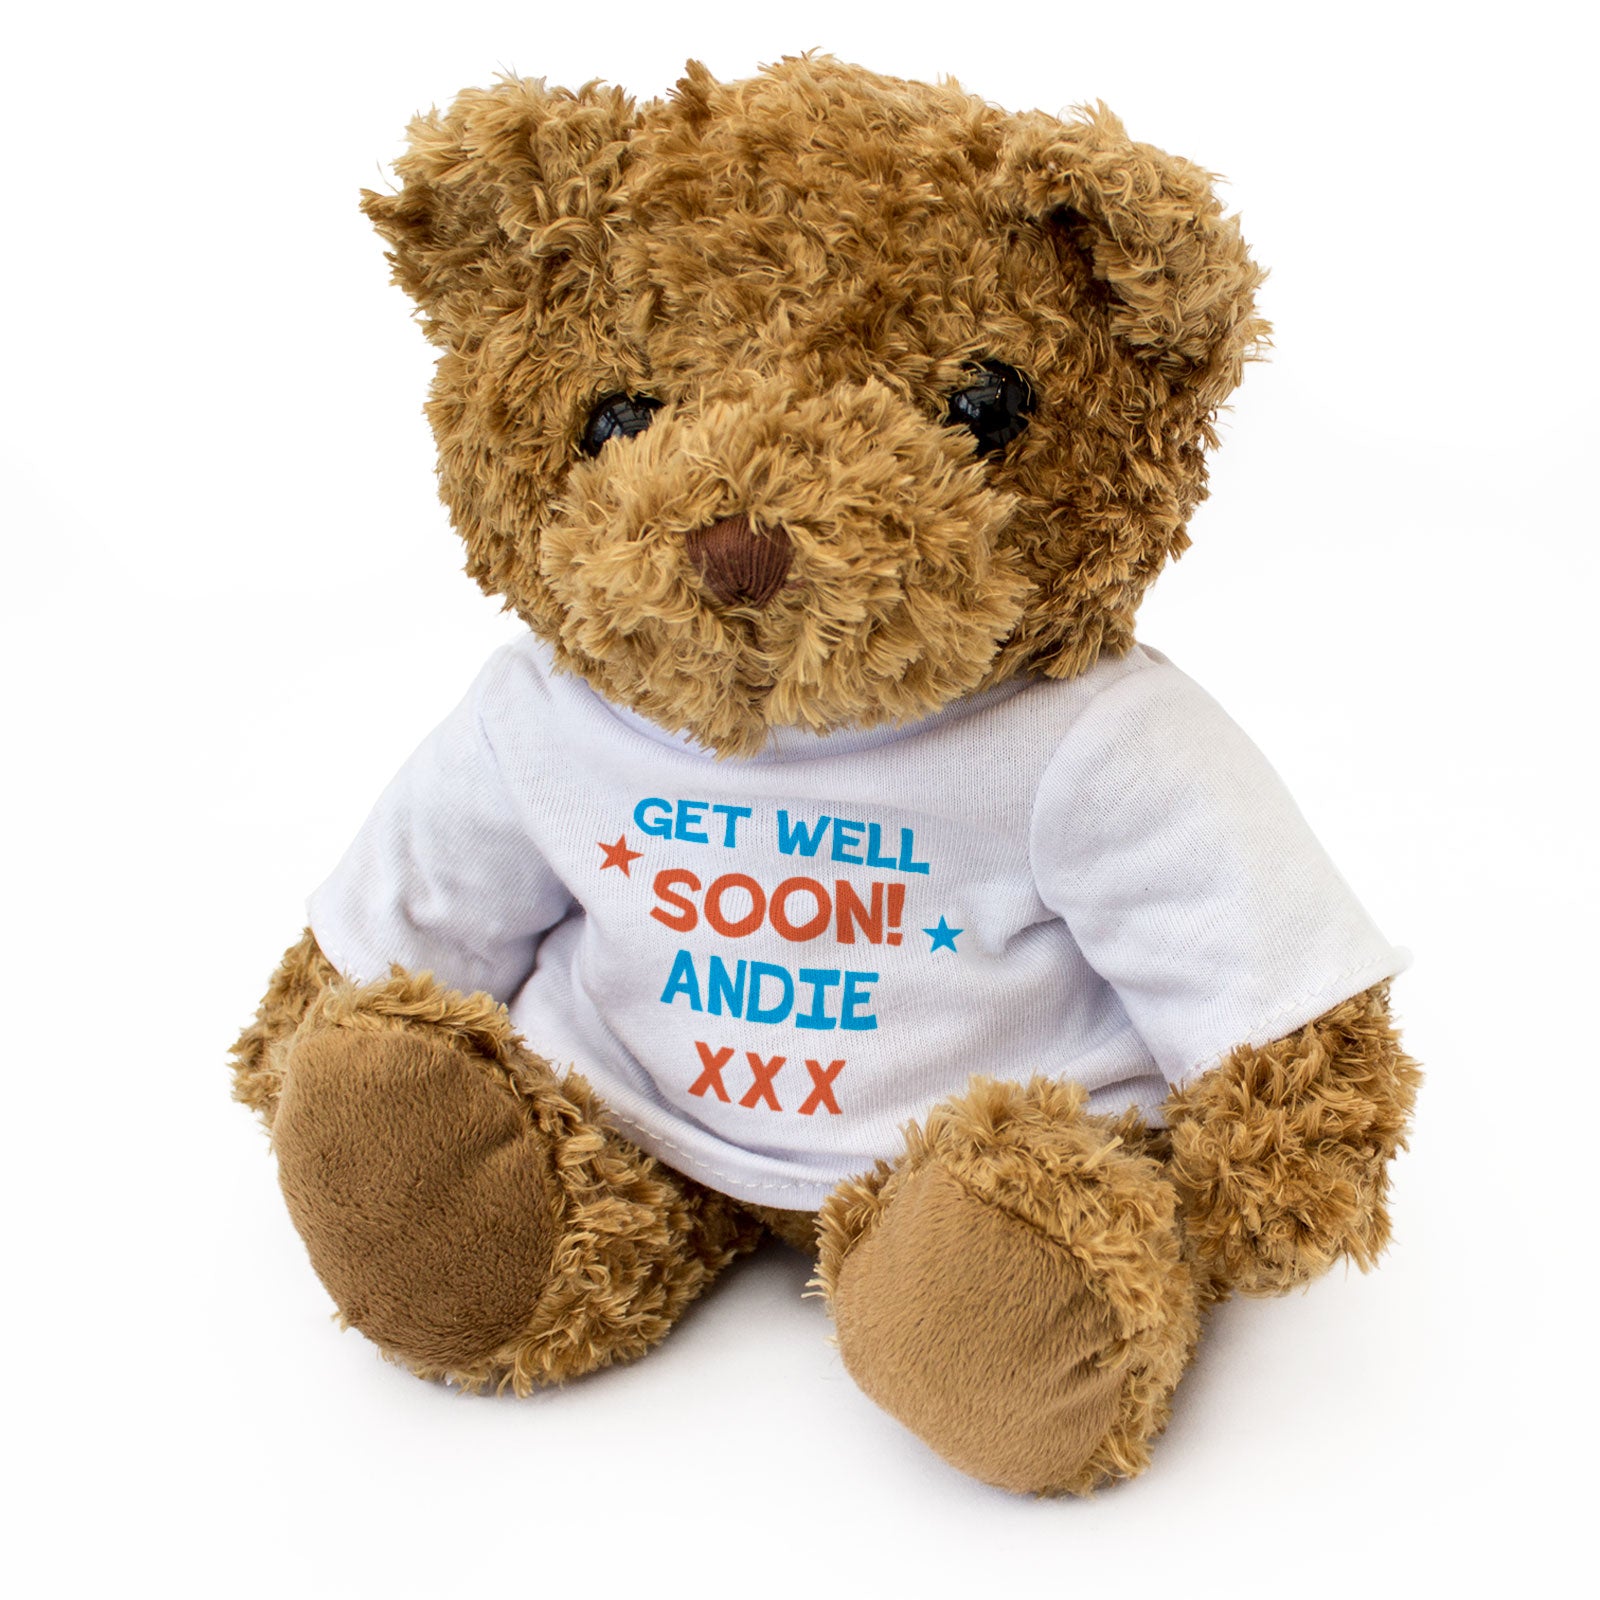 Get Well Soon Andie - Teddy Bear